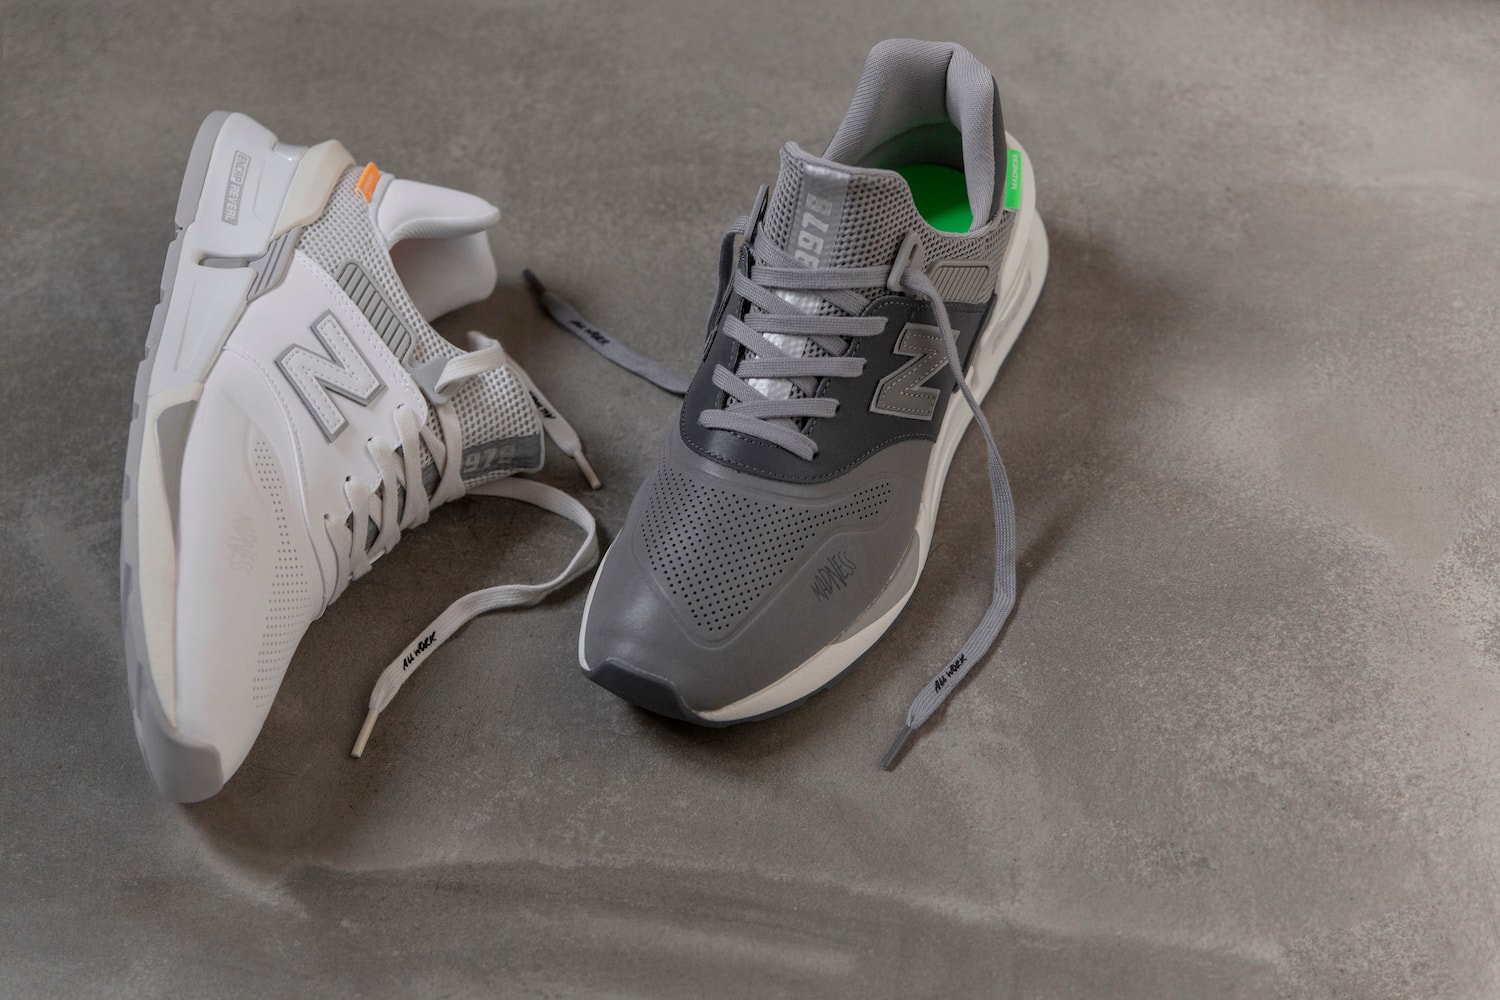 New Balance x MADNESS 997S 联名鞋款正式登场